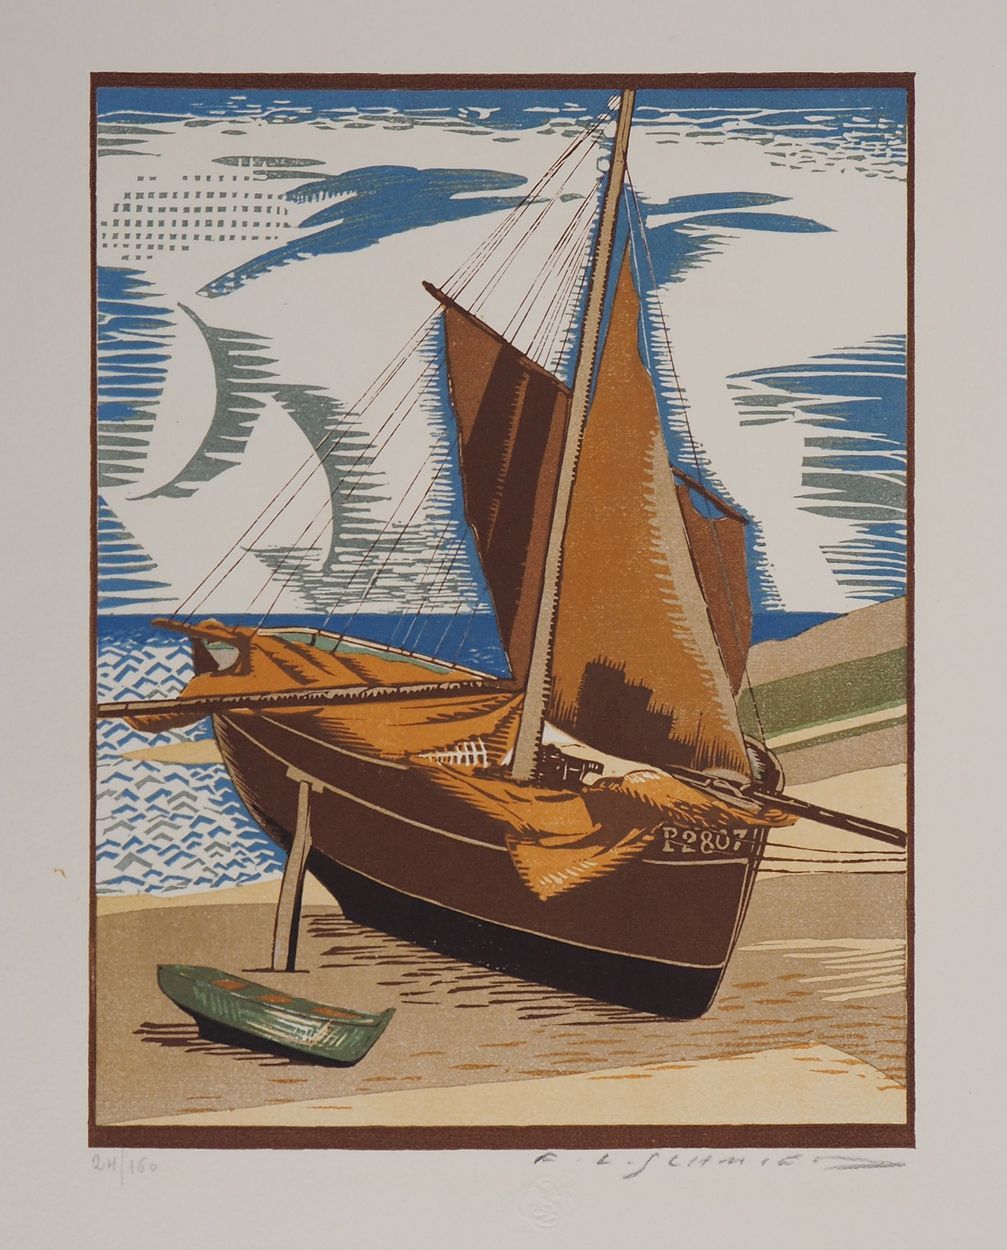 François-Louis Schmied François-Louis SCHMIED

Bretaña, barco en la playa, 1924
&hellip;